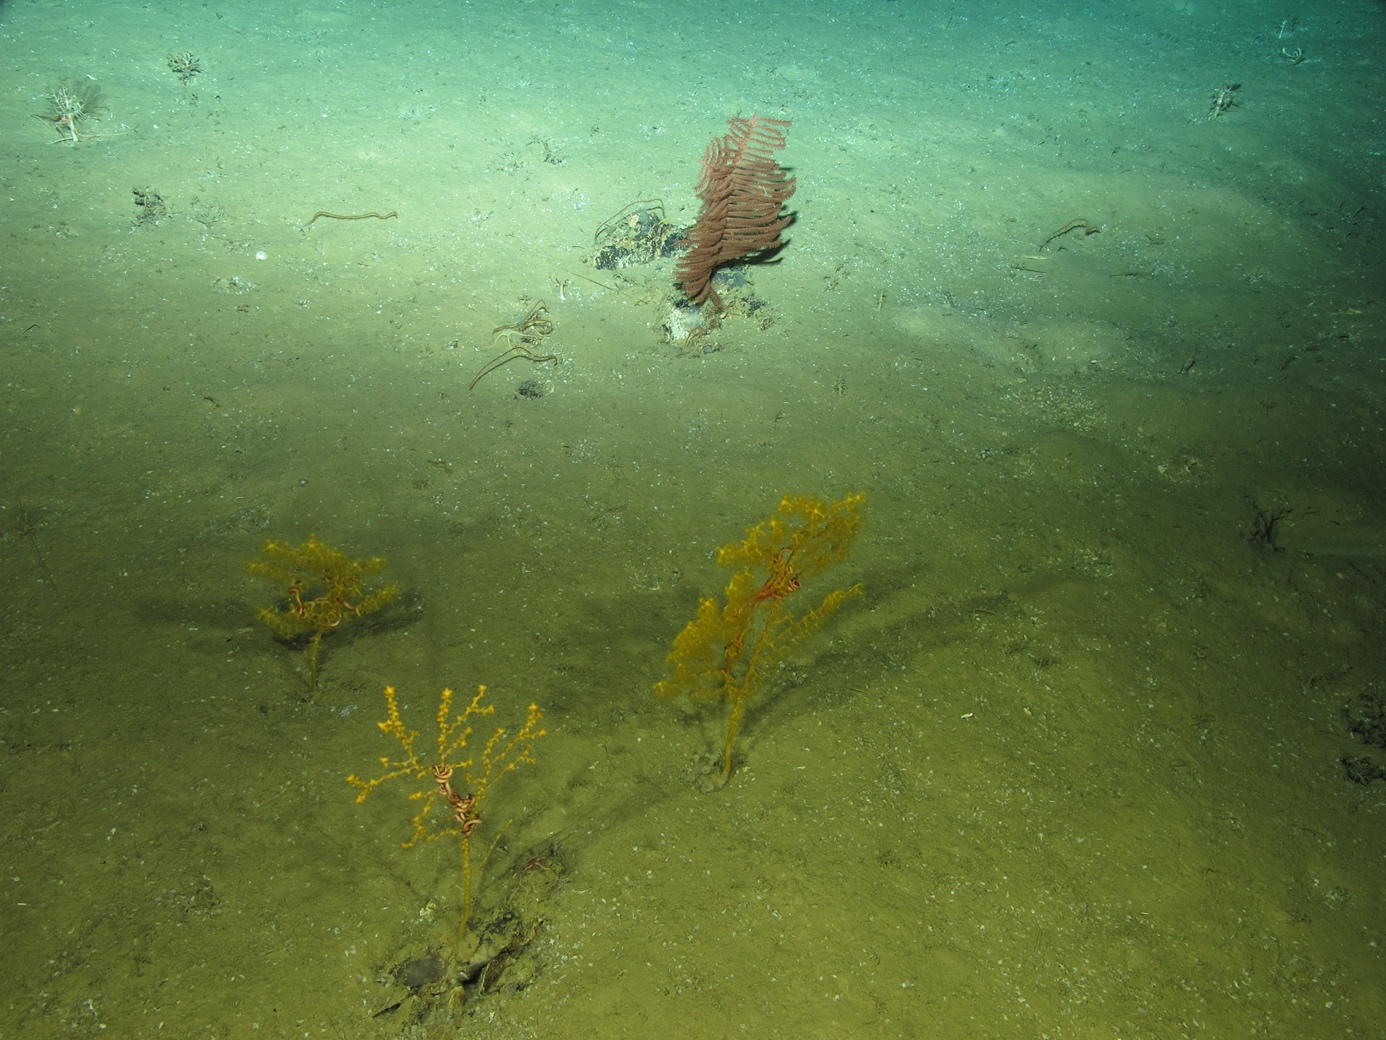 Gorgonias y corales negros a 1960 metros de profundidad en el océano Atlántico filmados durante la campaña internacional MEDWAVES liderado por el IEO. © MEDWAVES/IEO/ATLAS project.